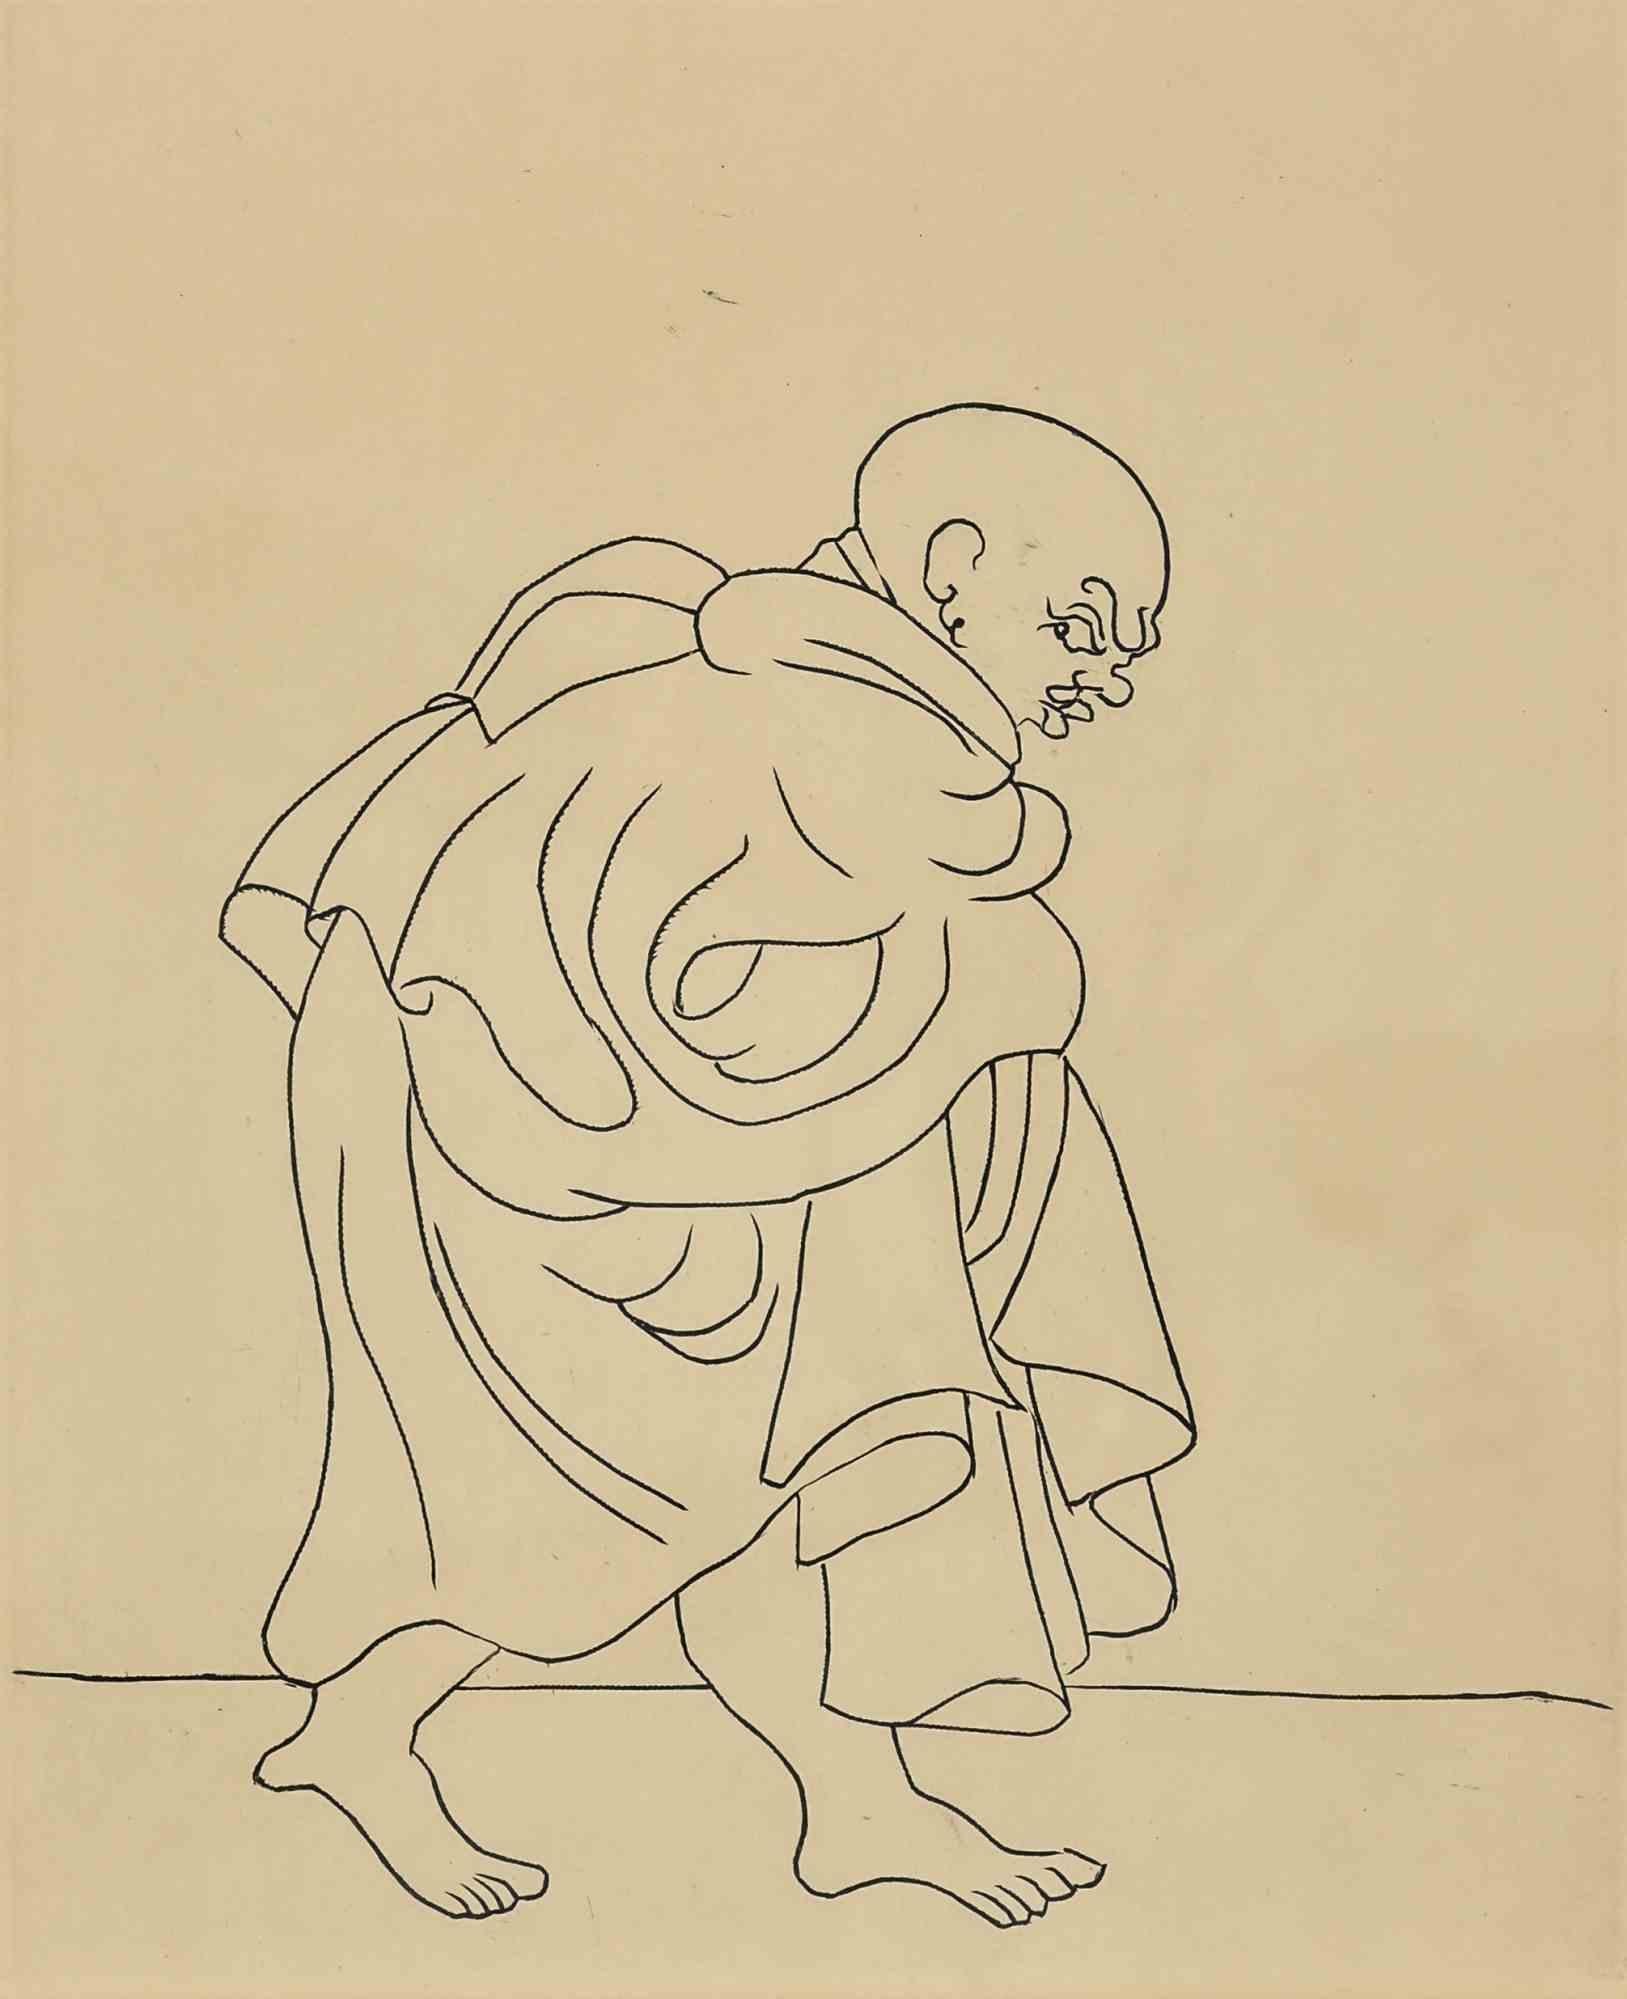 Der Mann, der sich versteckt, ist ein originelles modernes Kunstwerk von André Derain.

Radierung auf Papier. Aus der Suite "Le Satyricon", 1934.

Einschließlich Rahmen.